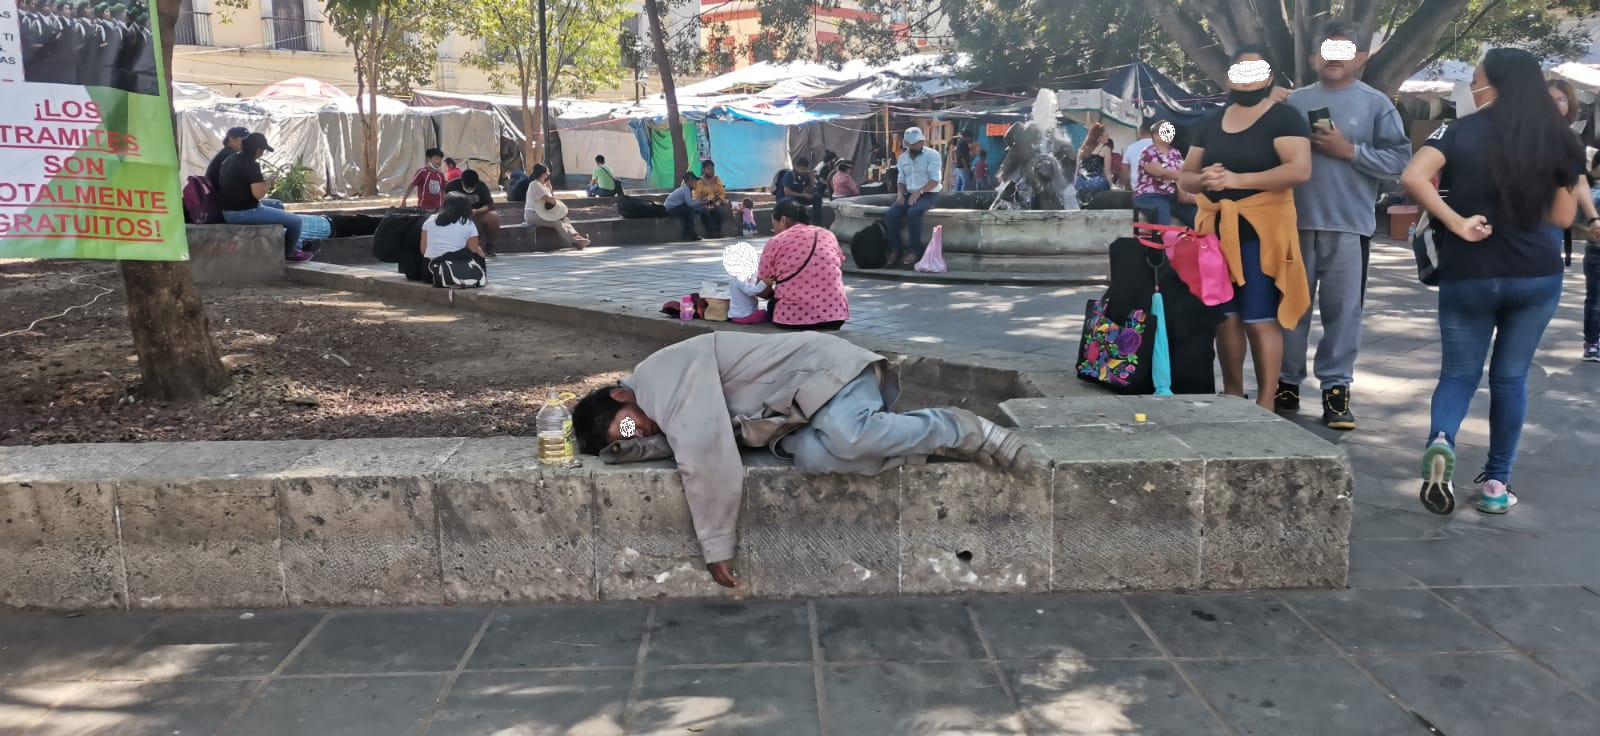 Crece número de personas que deambulan en la calle | El Imparcial de Oaxaca